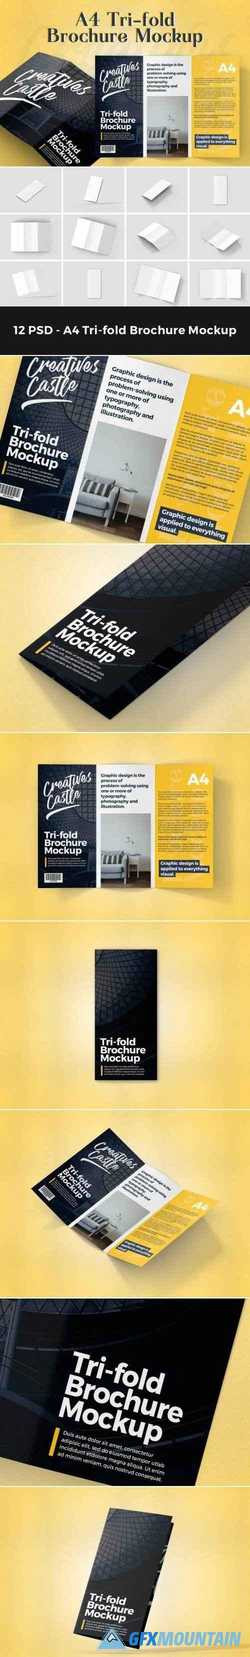 A4 Tri-fold Brochure Mockup